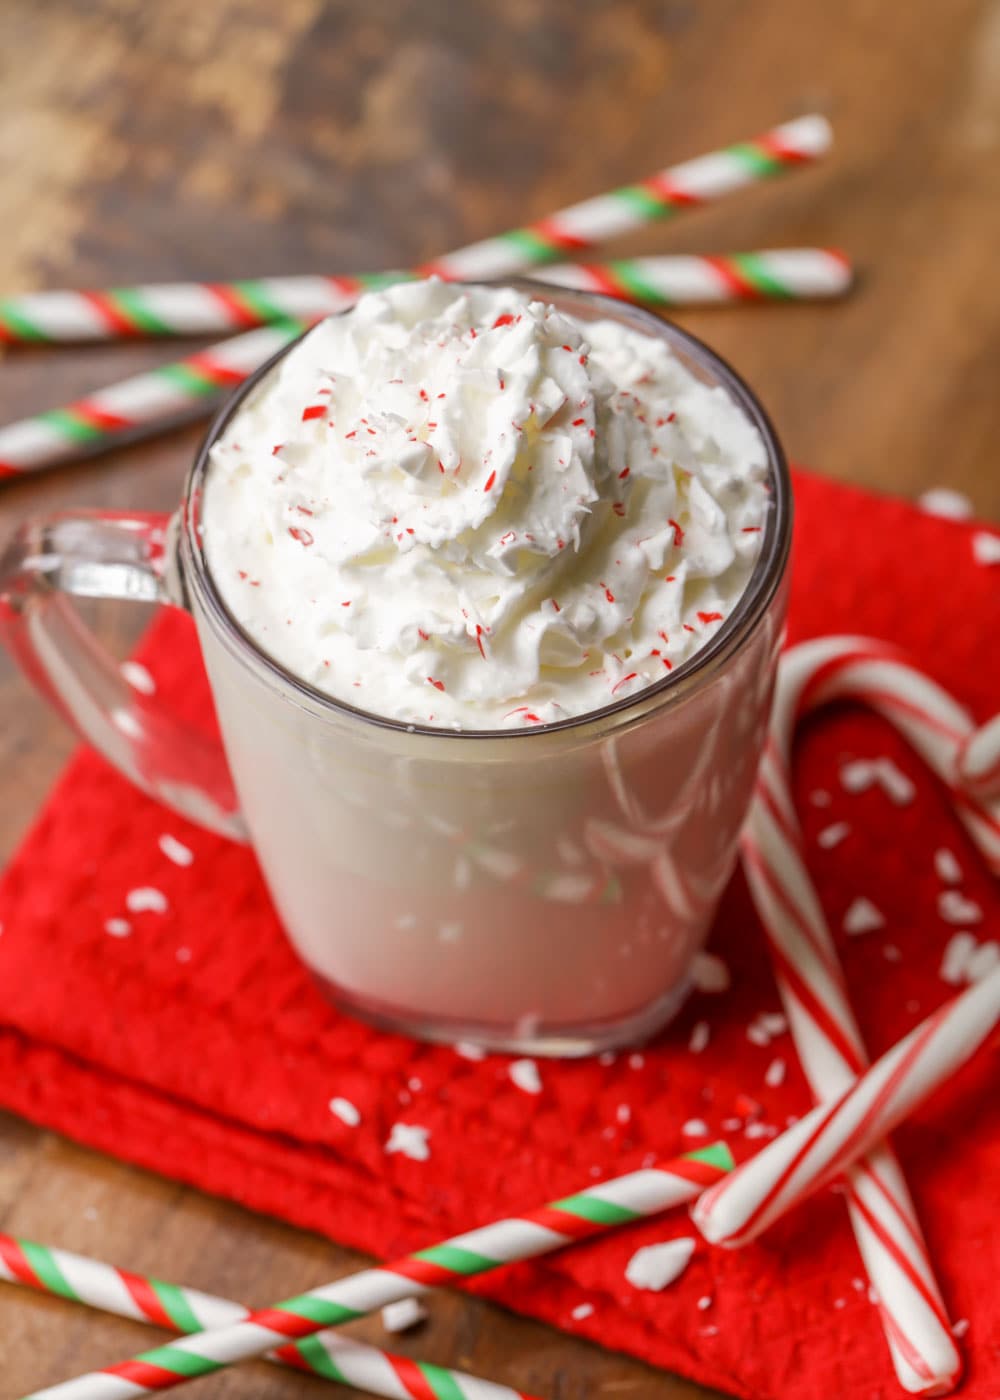 Peppermint hot chocolate recipe in a glass mug